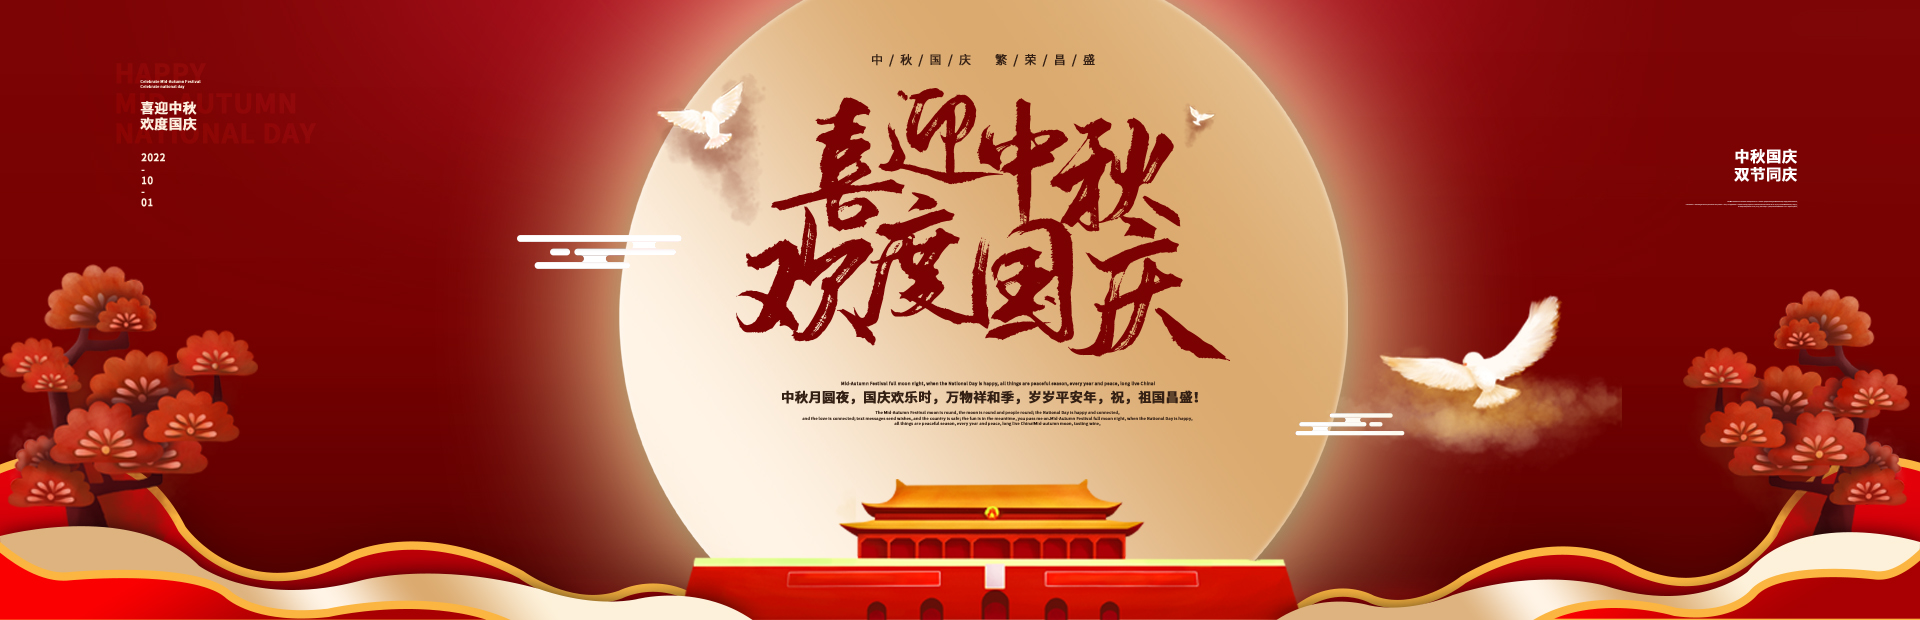 惠州天博入口(中国)有限公司自动化设备祝大家中秋节快乐